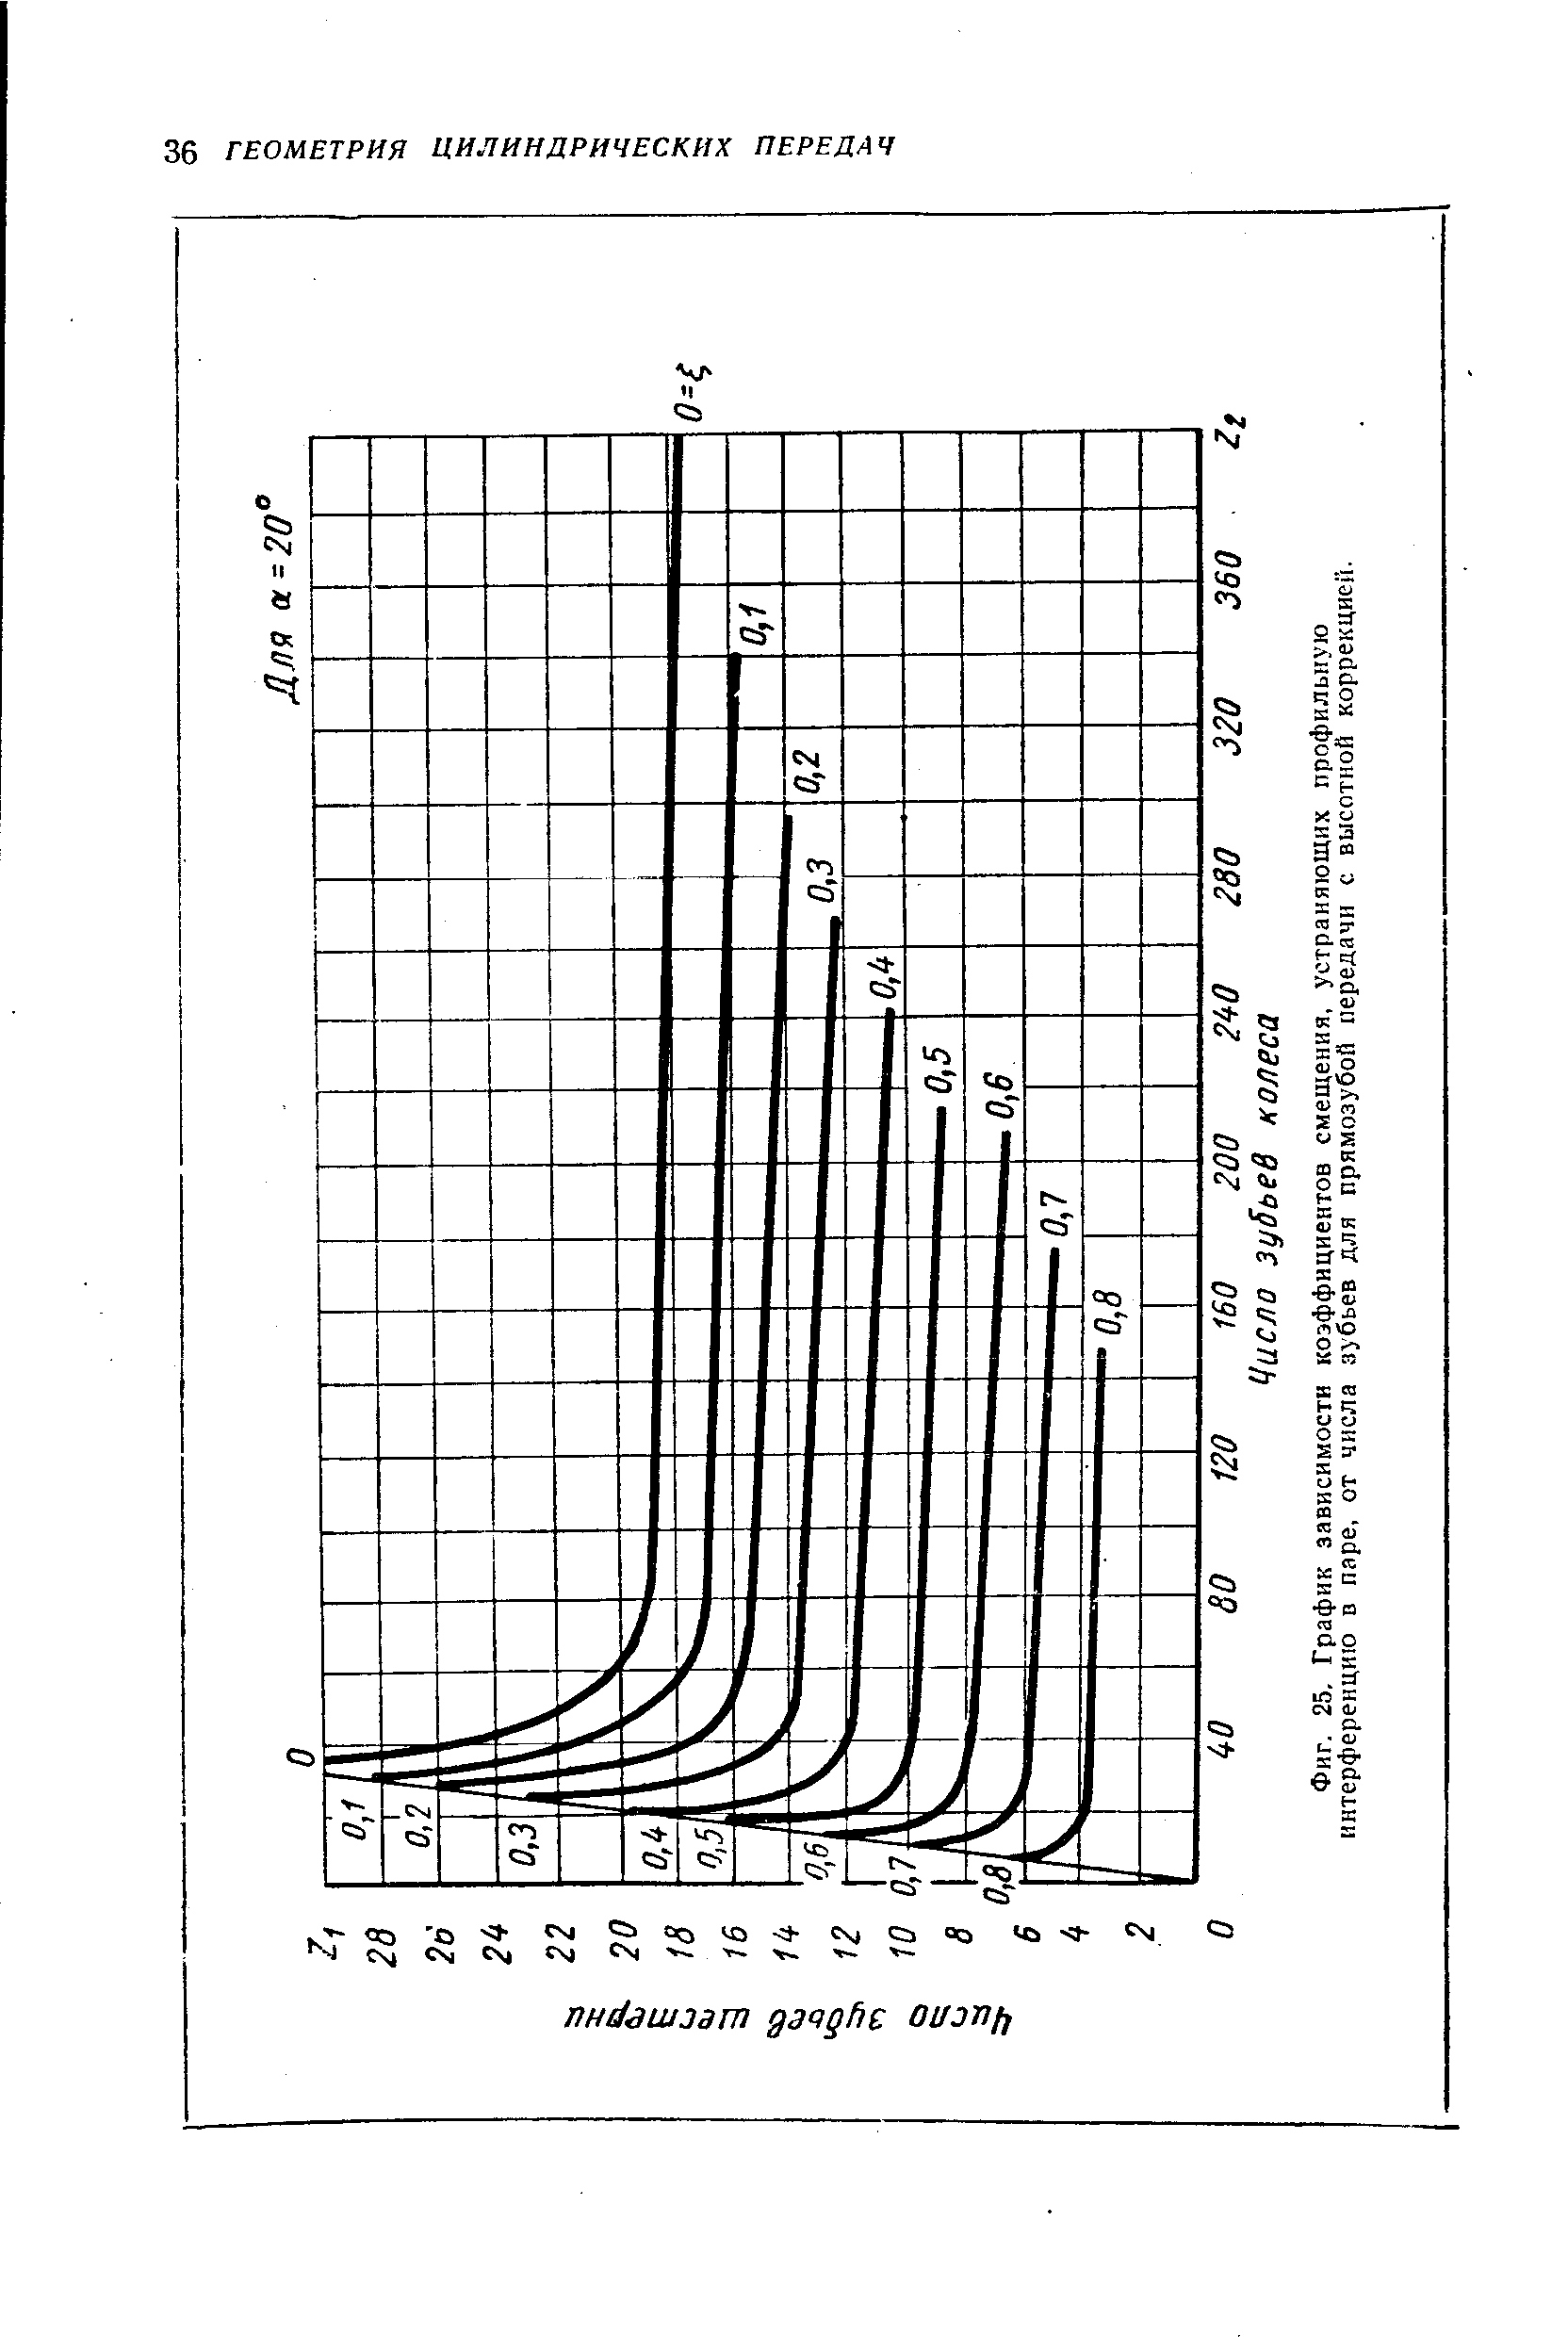 Фиг. 25, График зависимости коэффициентов смещения, устраняющих профильную интерференцию в паре, от числа зубьев для прямозубой передачи с высотной коррекцией.
